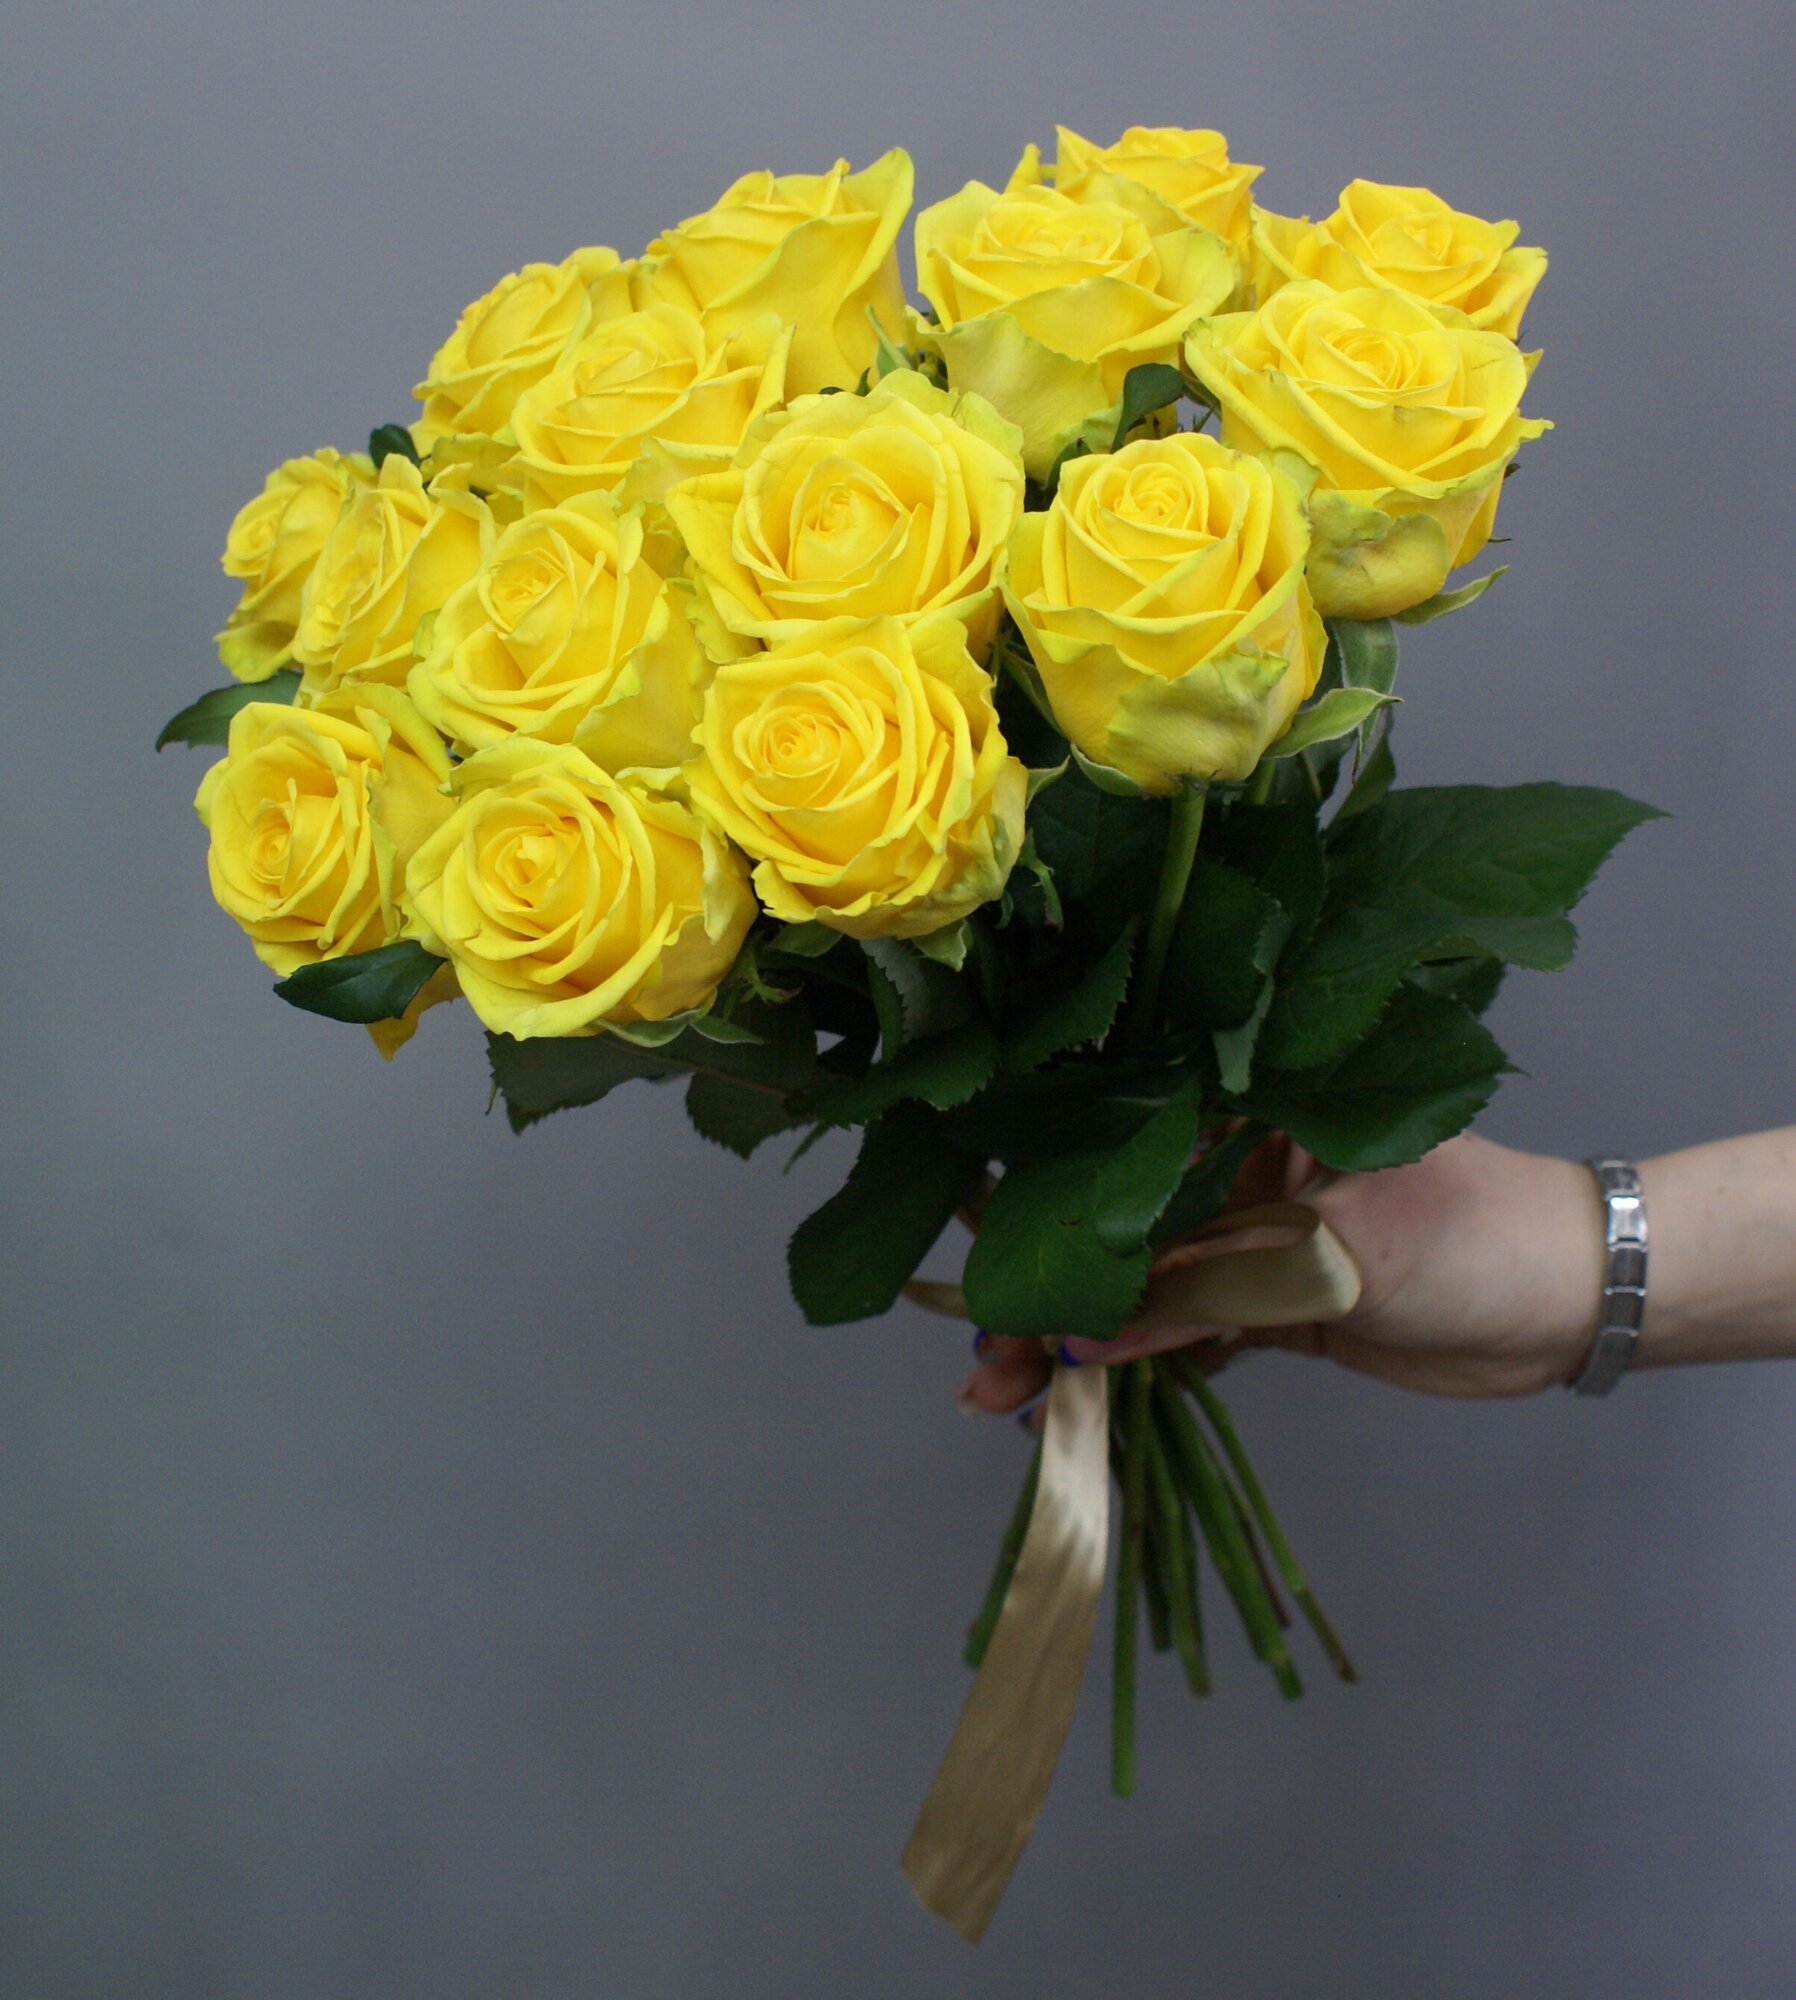 Розы желтые 17 штук,"Рассвет" под ленту 45 см Россия(большой бутон)